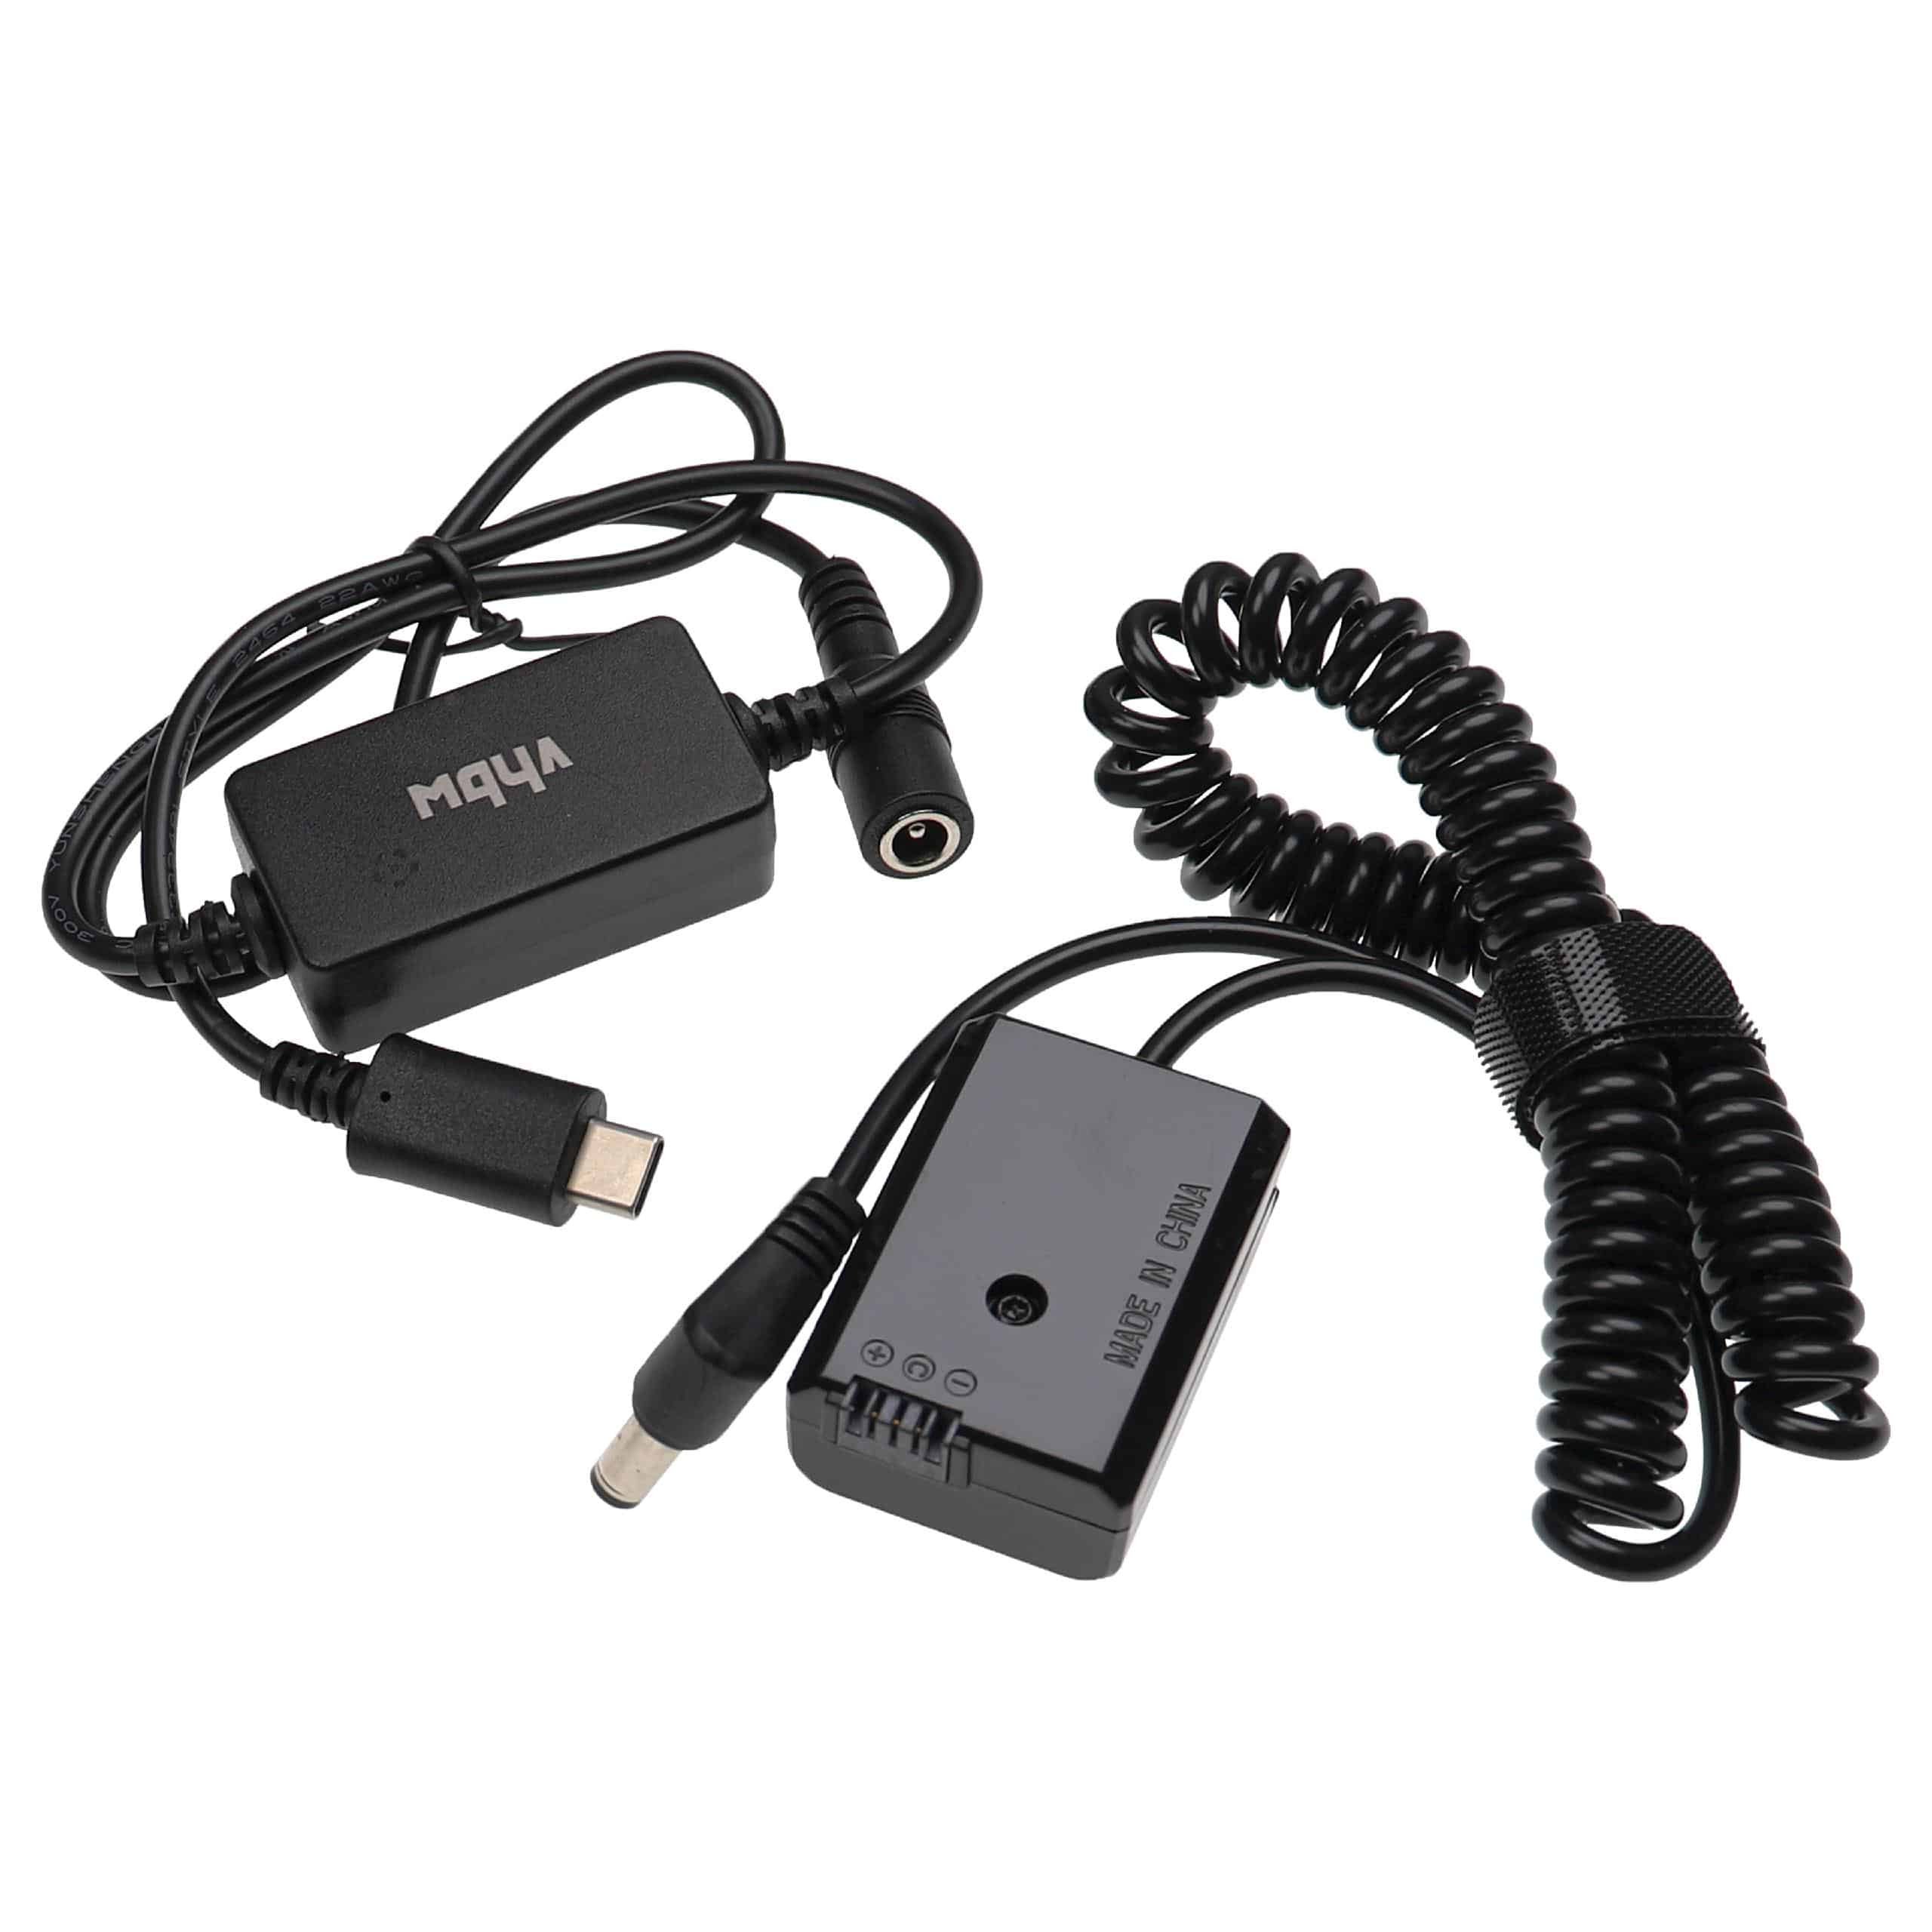 USB Netzteil als Ersatz für Sony AC-PW20 für Kamera + DC Kuppler ersetzt Sony NP-FW50